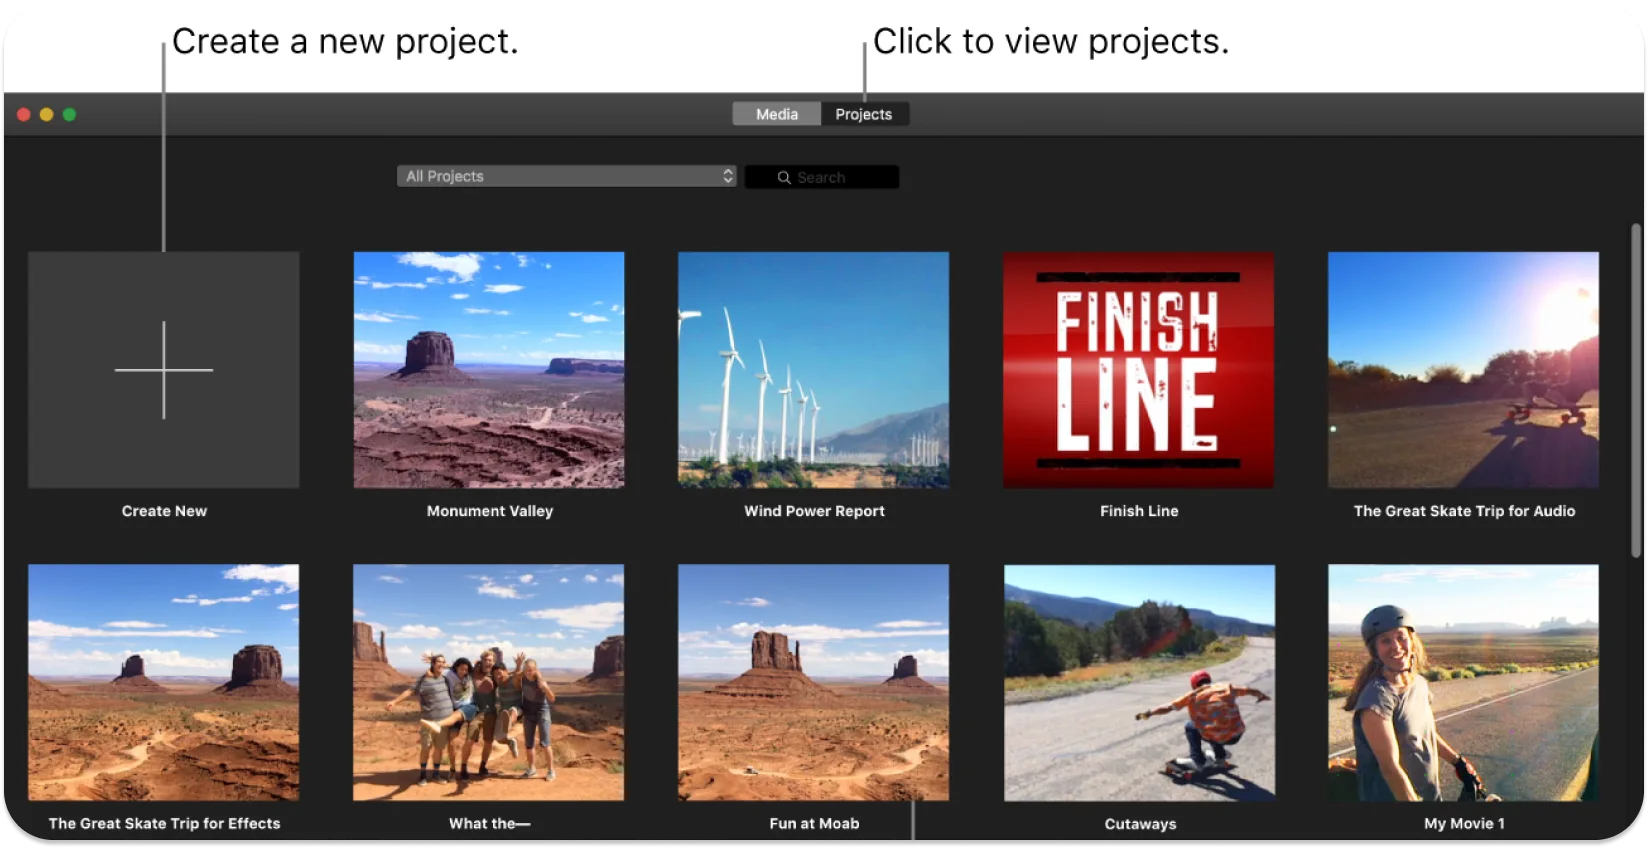 ビデオプロジェクトのサムネールの配列を表示するiMovieインターフェイスと、新しいプロジェクトを作成するか、既存のプロジェクトを開くように求めるプロンプト。
